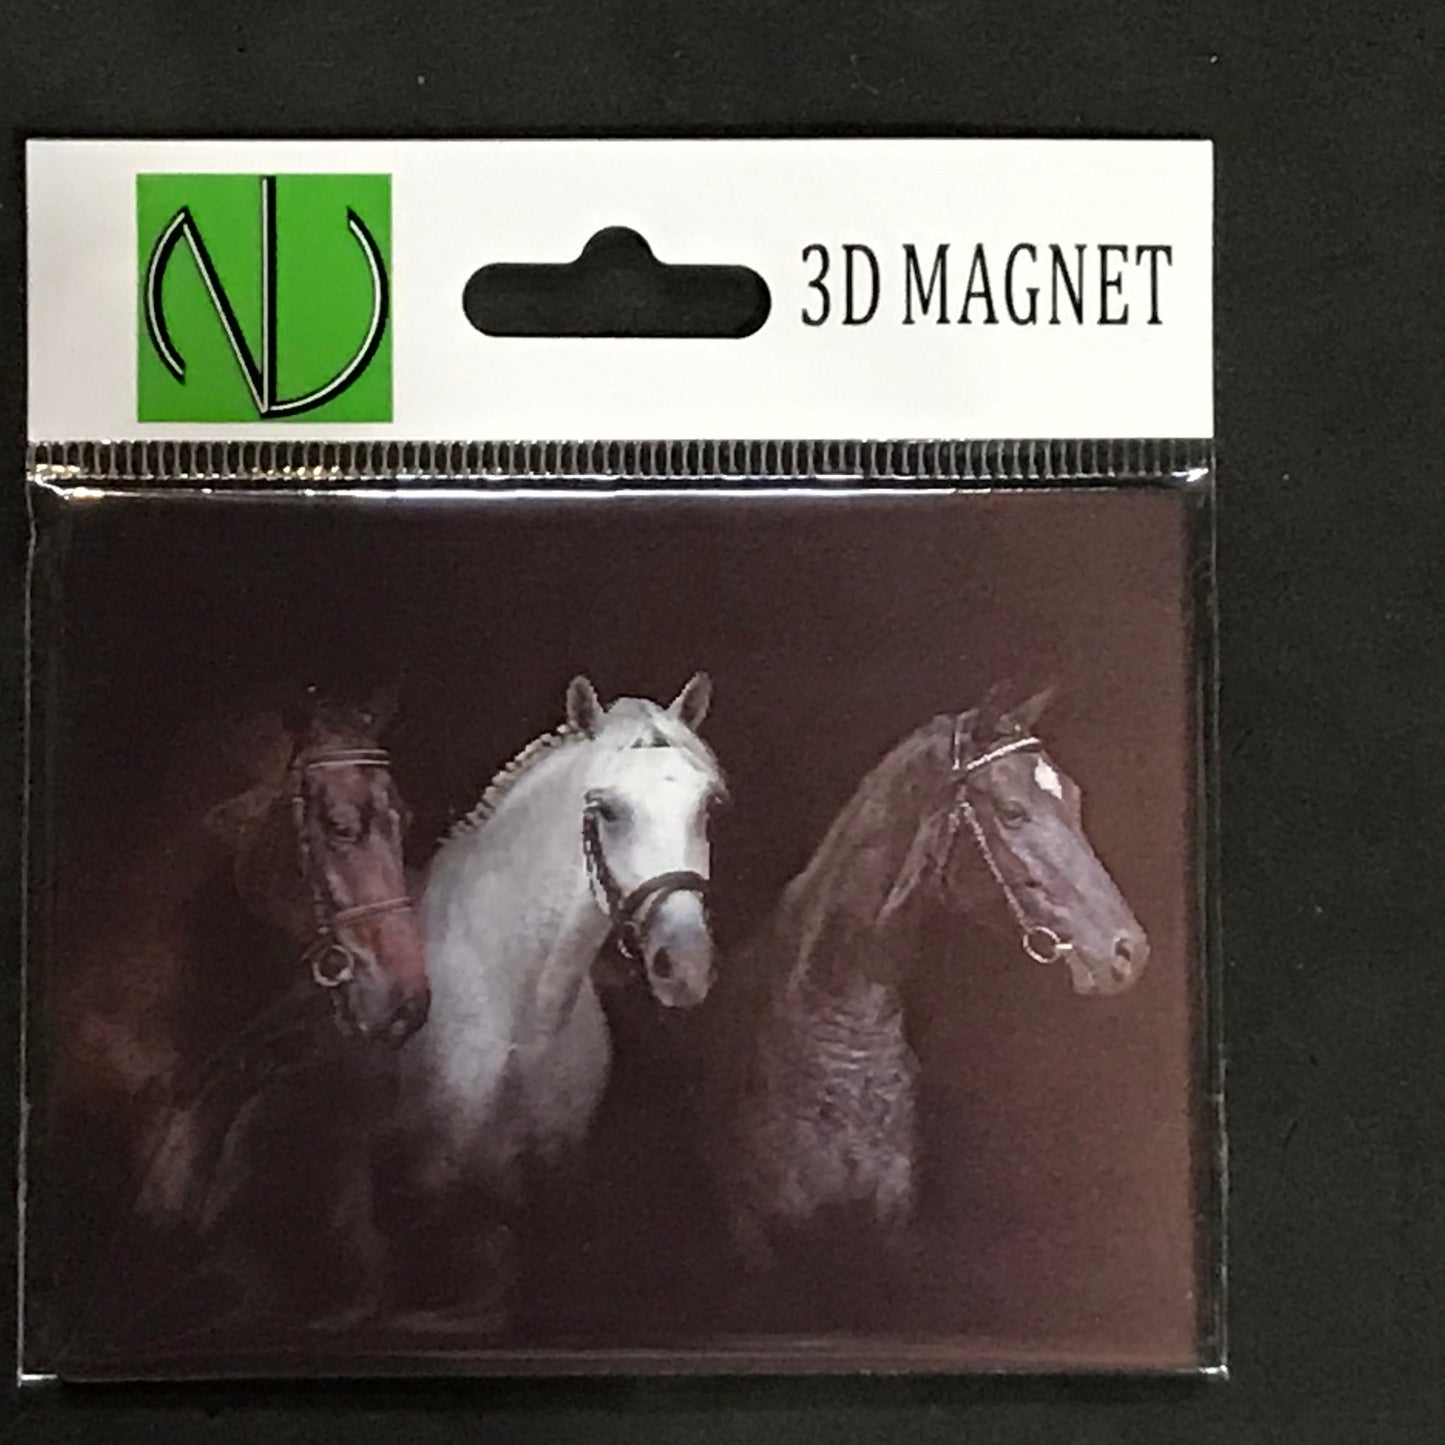 HORSES HEADS TRIO 3D LENTICULAR MAGNET 2.75" X 3.5"